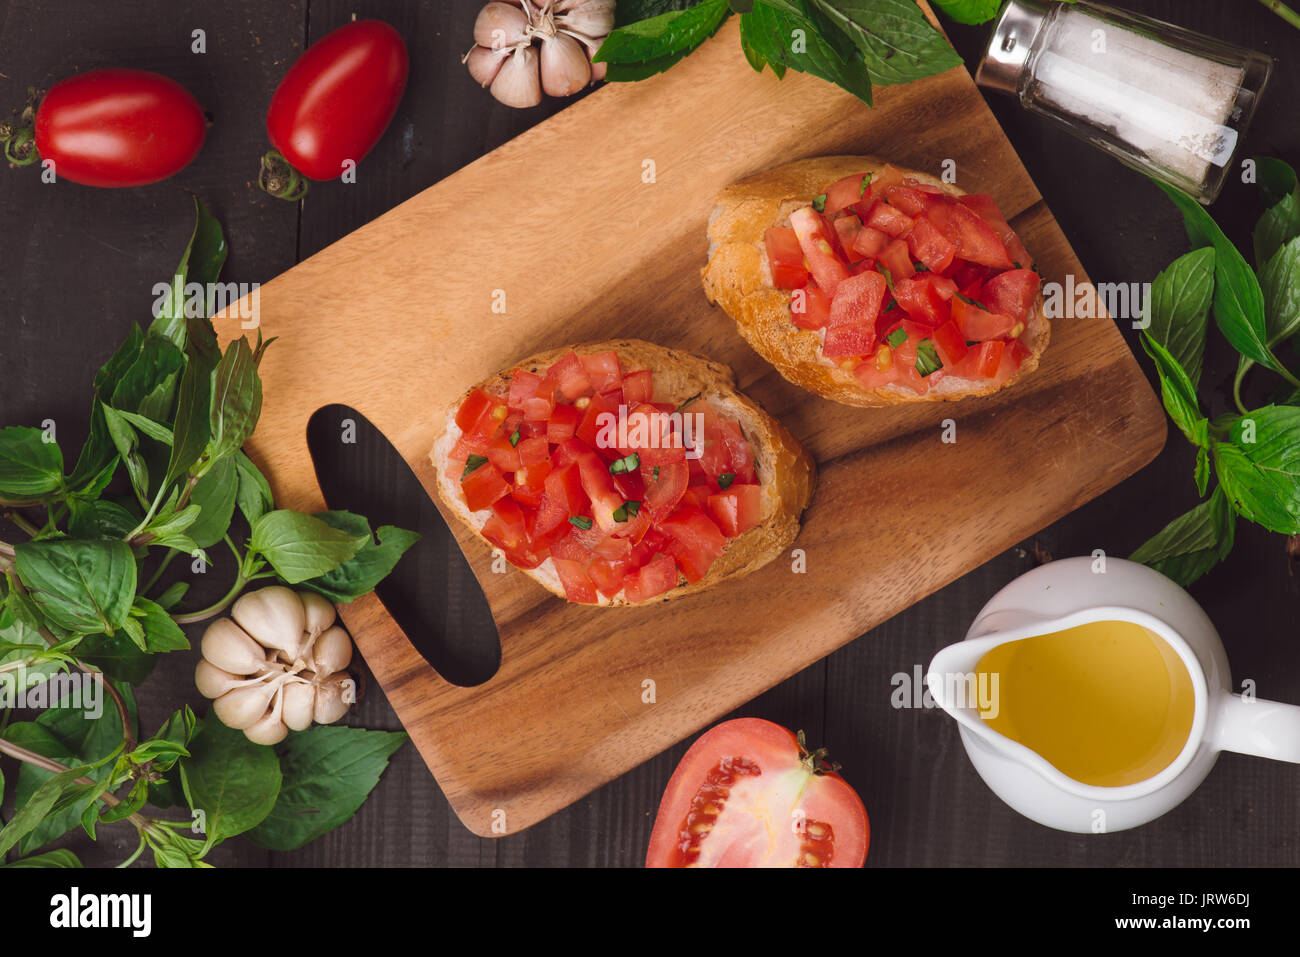 Italien simple bruschetta à la tomate, appétissant sur la table en bois Banque D'Images